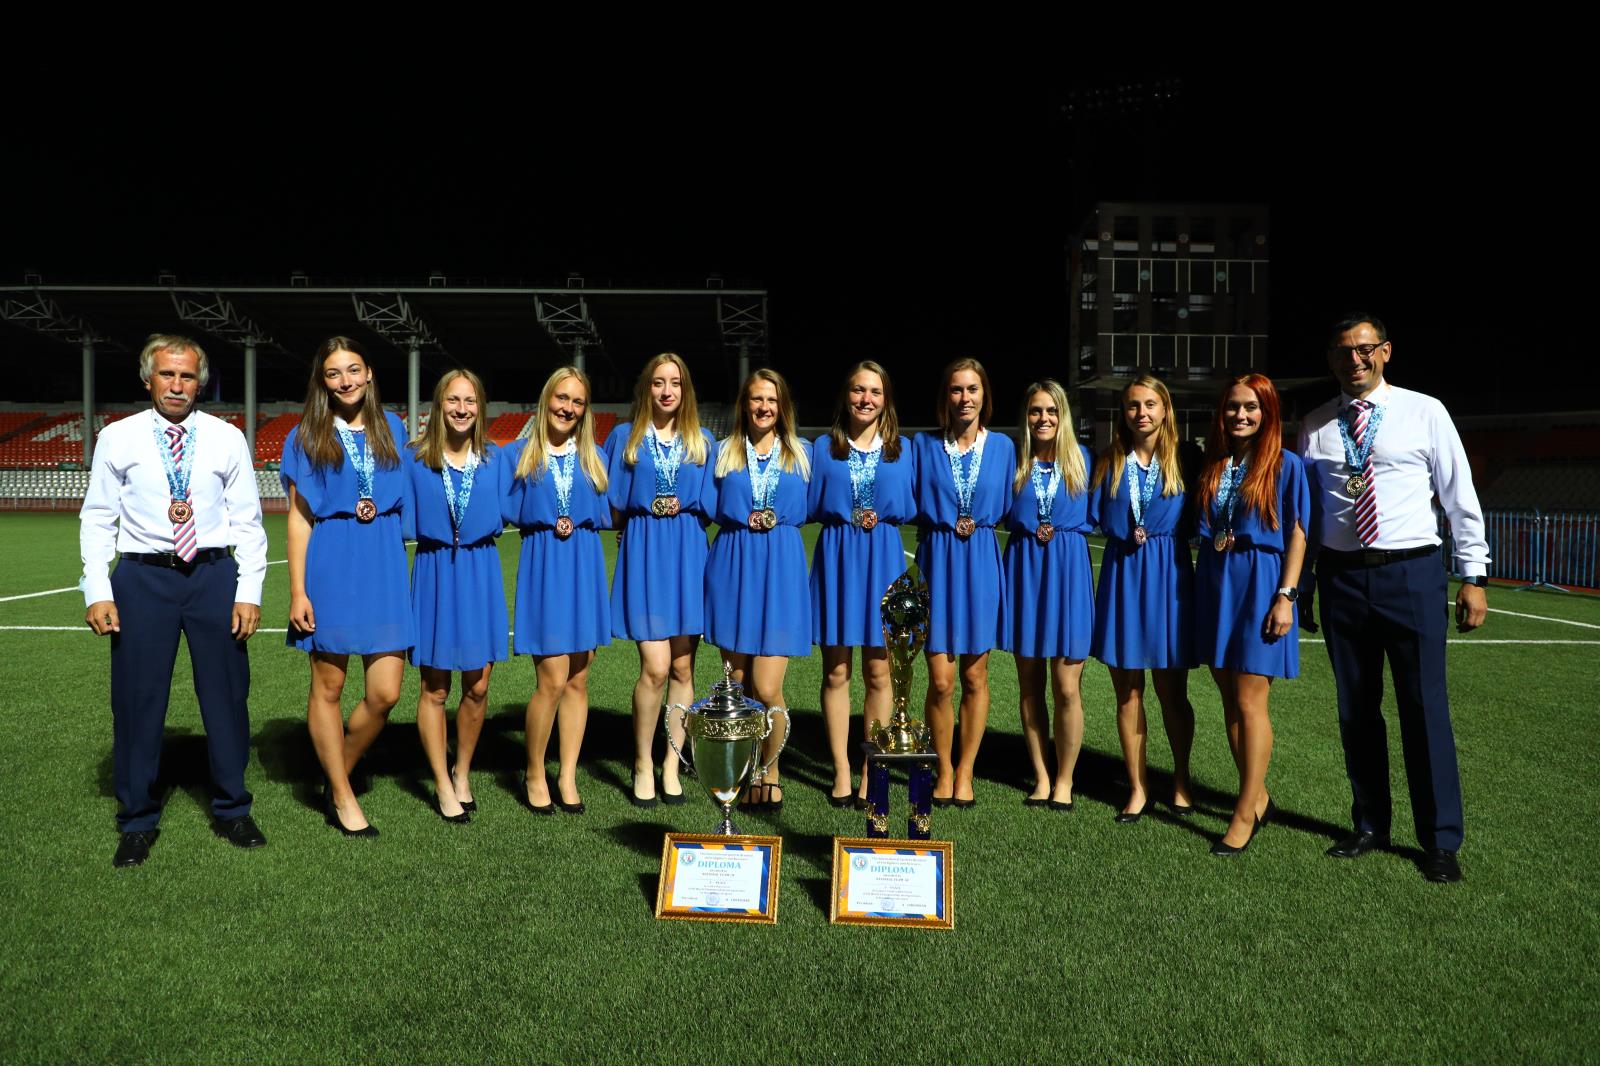 Společná fotografie českého týmu žen při závěrečném ceremoniálu ve slavnostním oděvu a cenami.jpg